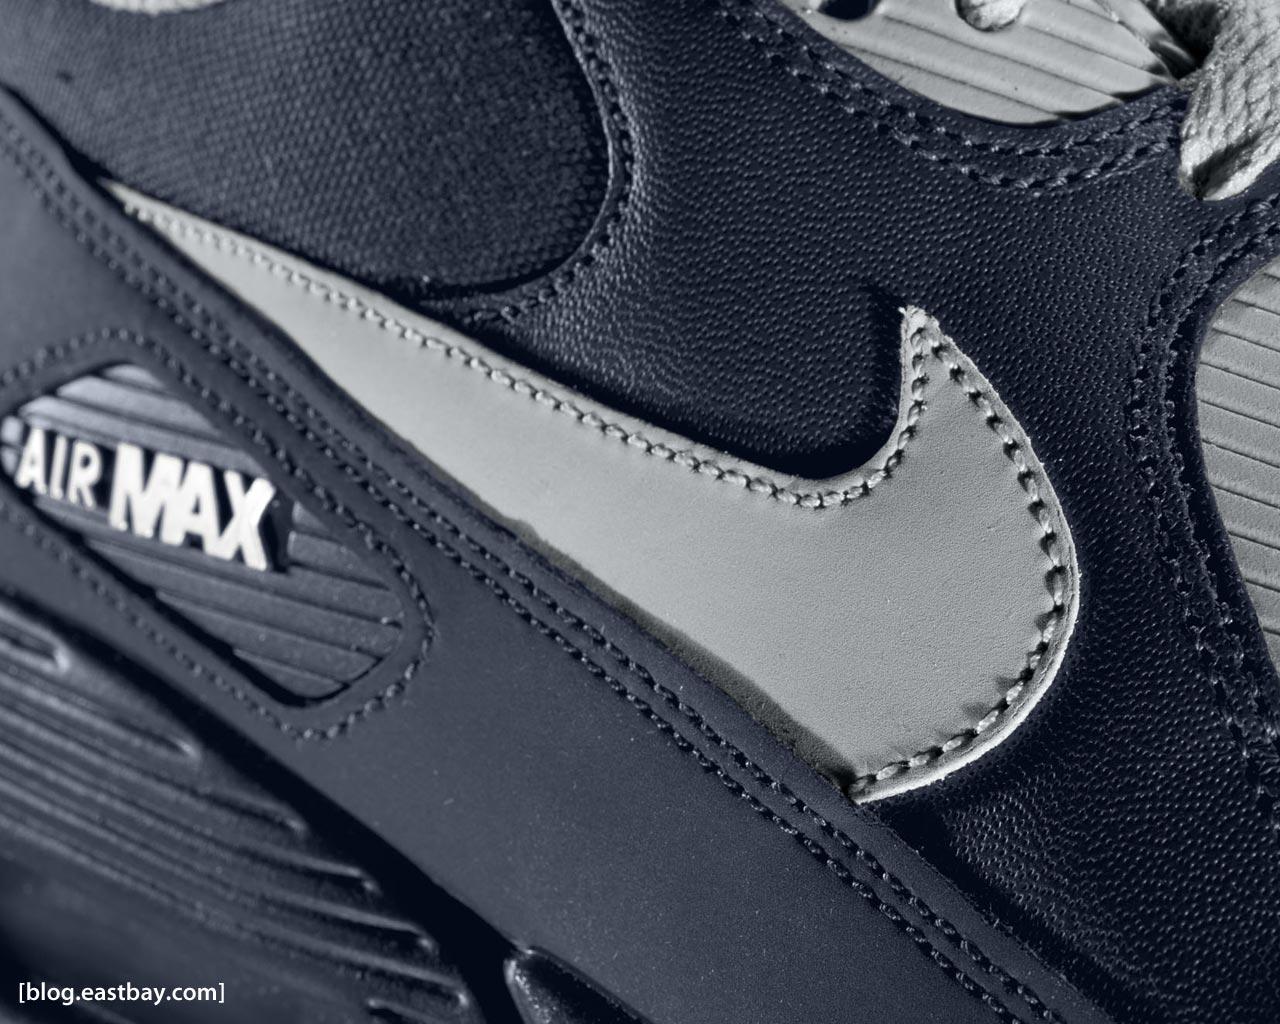 Nike Air Max Wallpapers - Wallpaper Cave